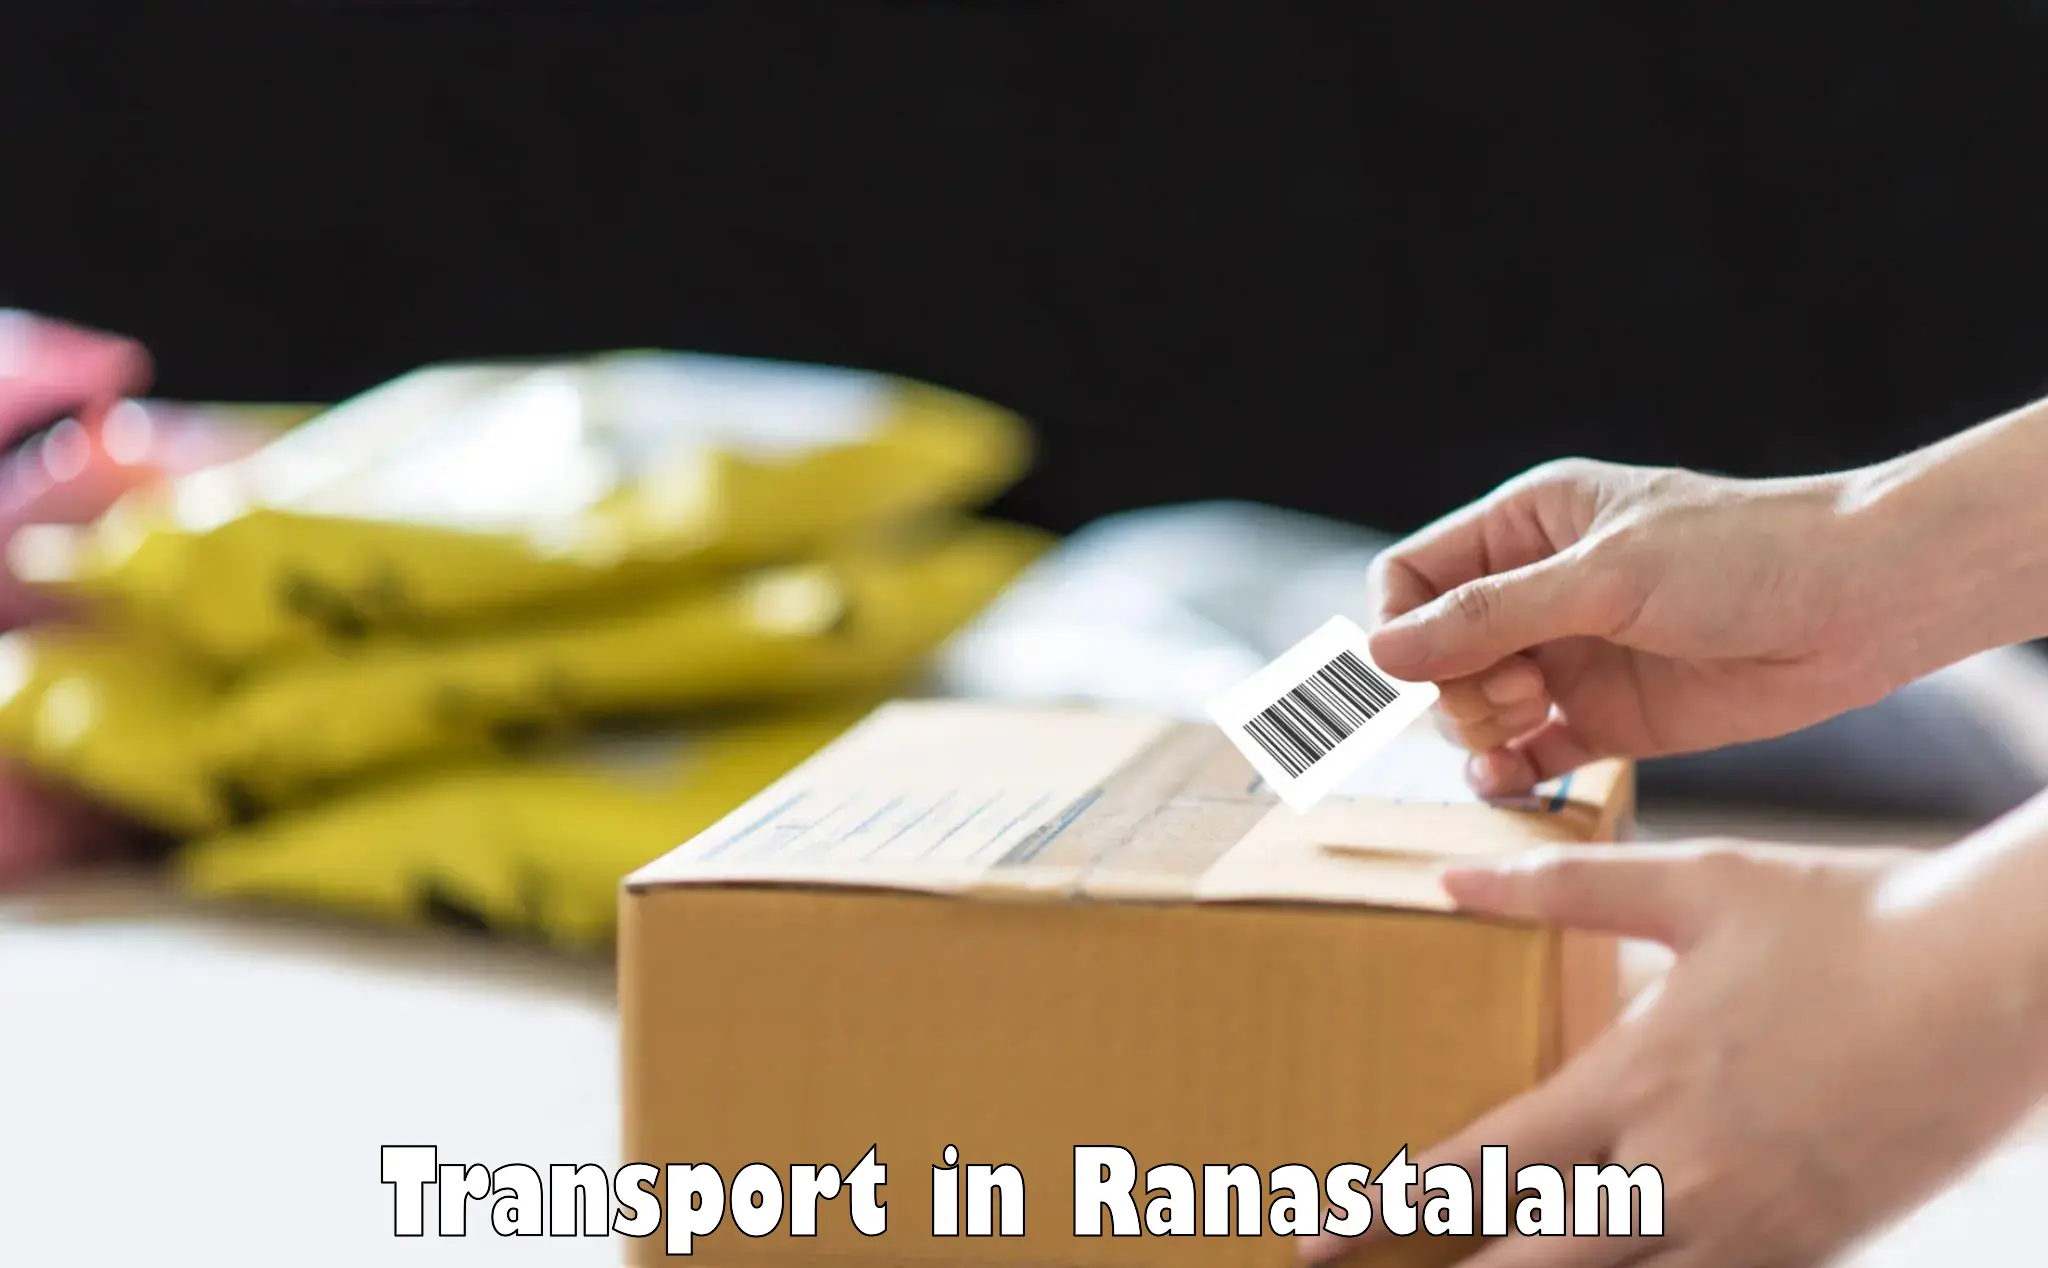 Delivery service in Ranastalam